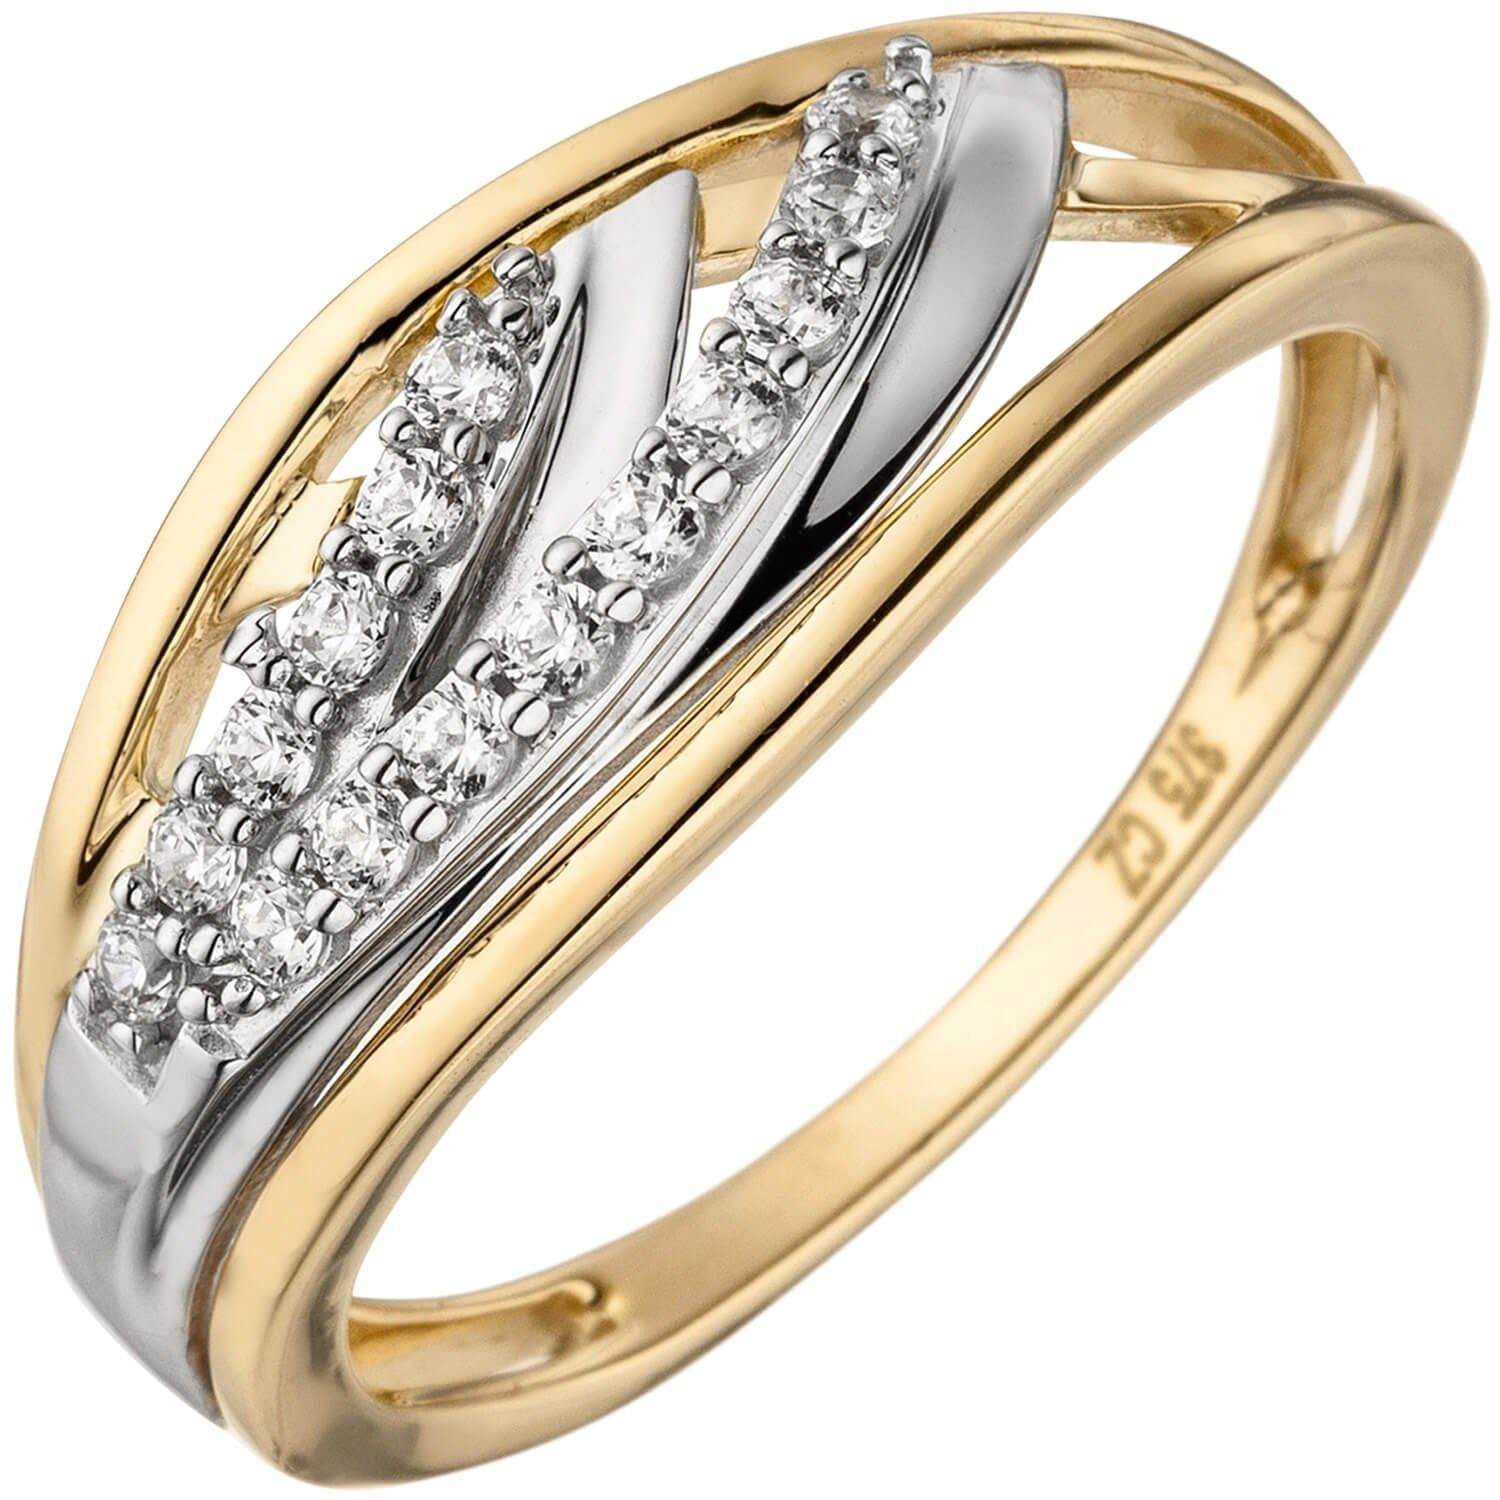 Schmuck Krone Silberring Eleganter Ring mit Zirkonia 375 Gold Gelbgold, Gold 375